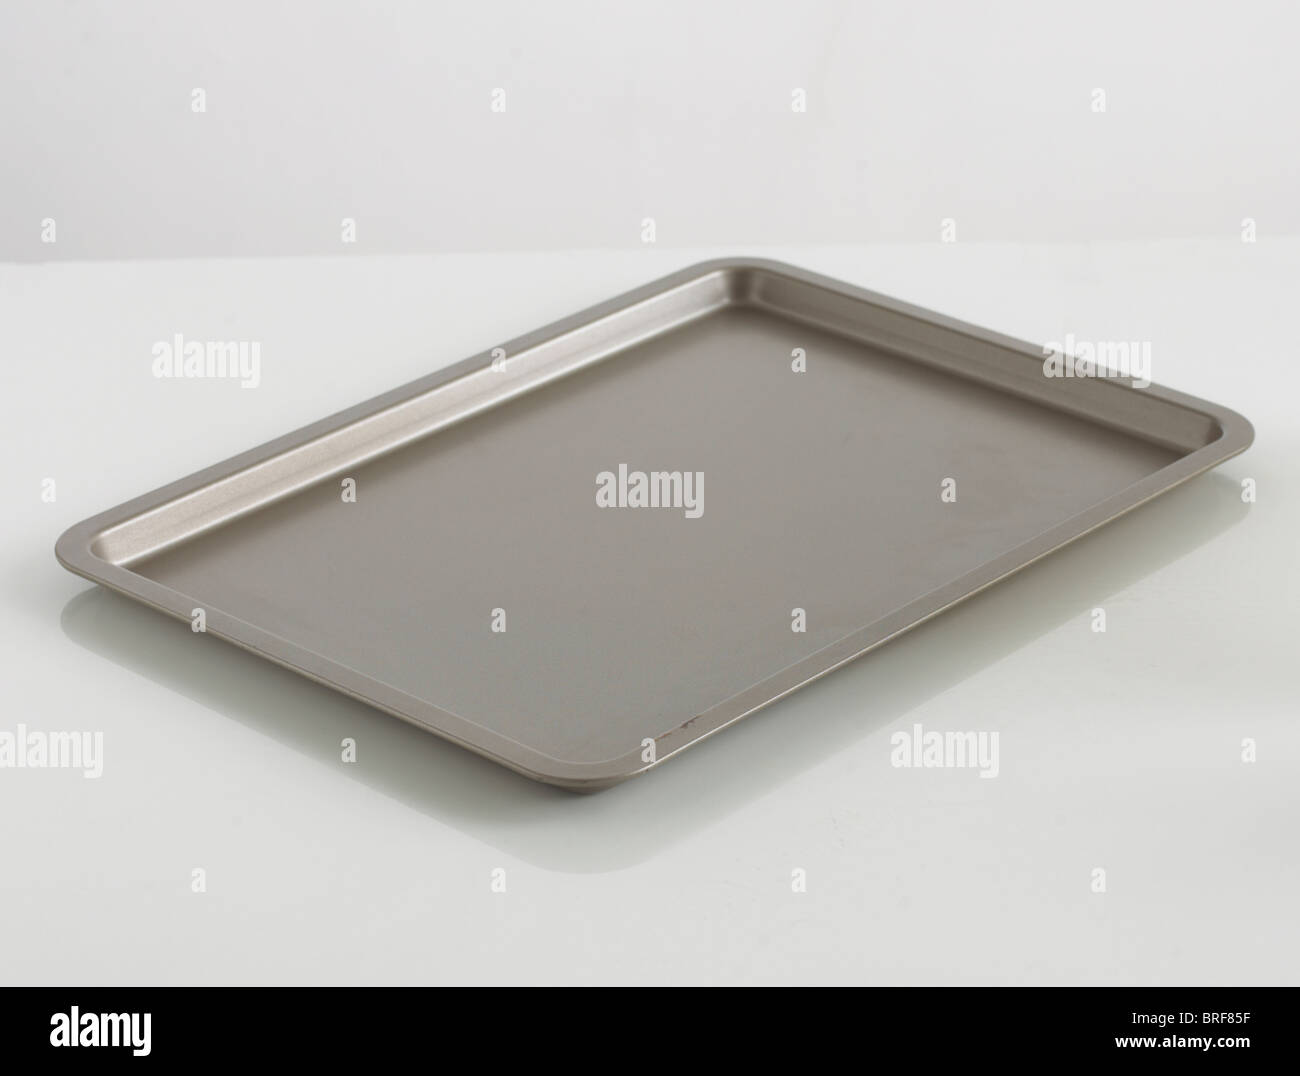 Baking tray on white background Stock Photo